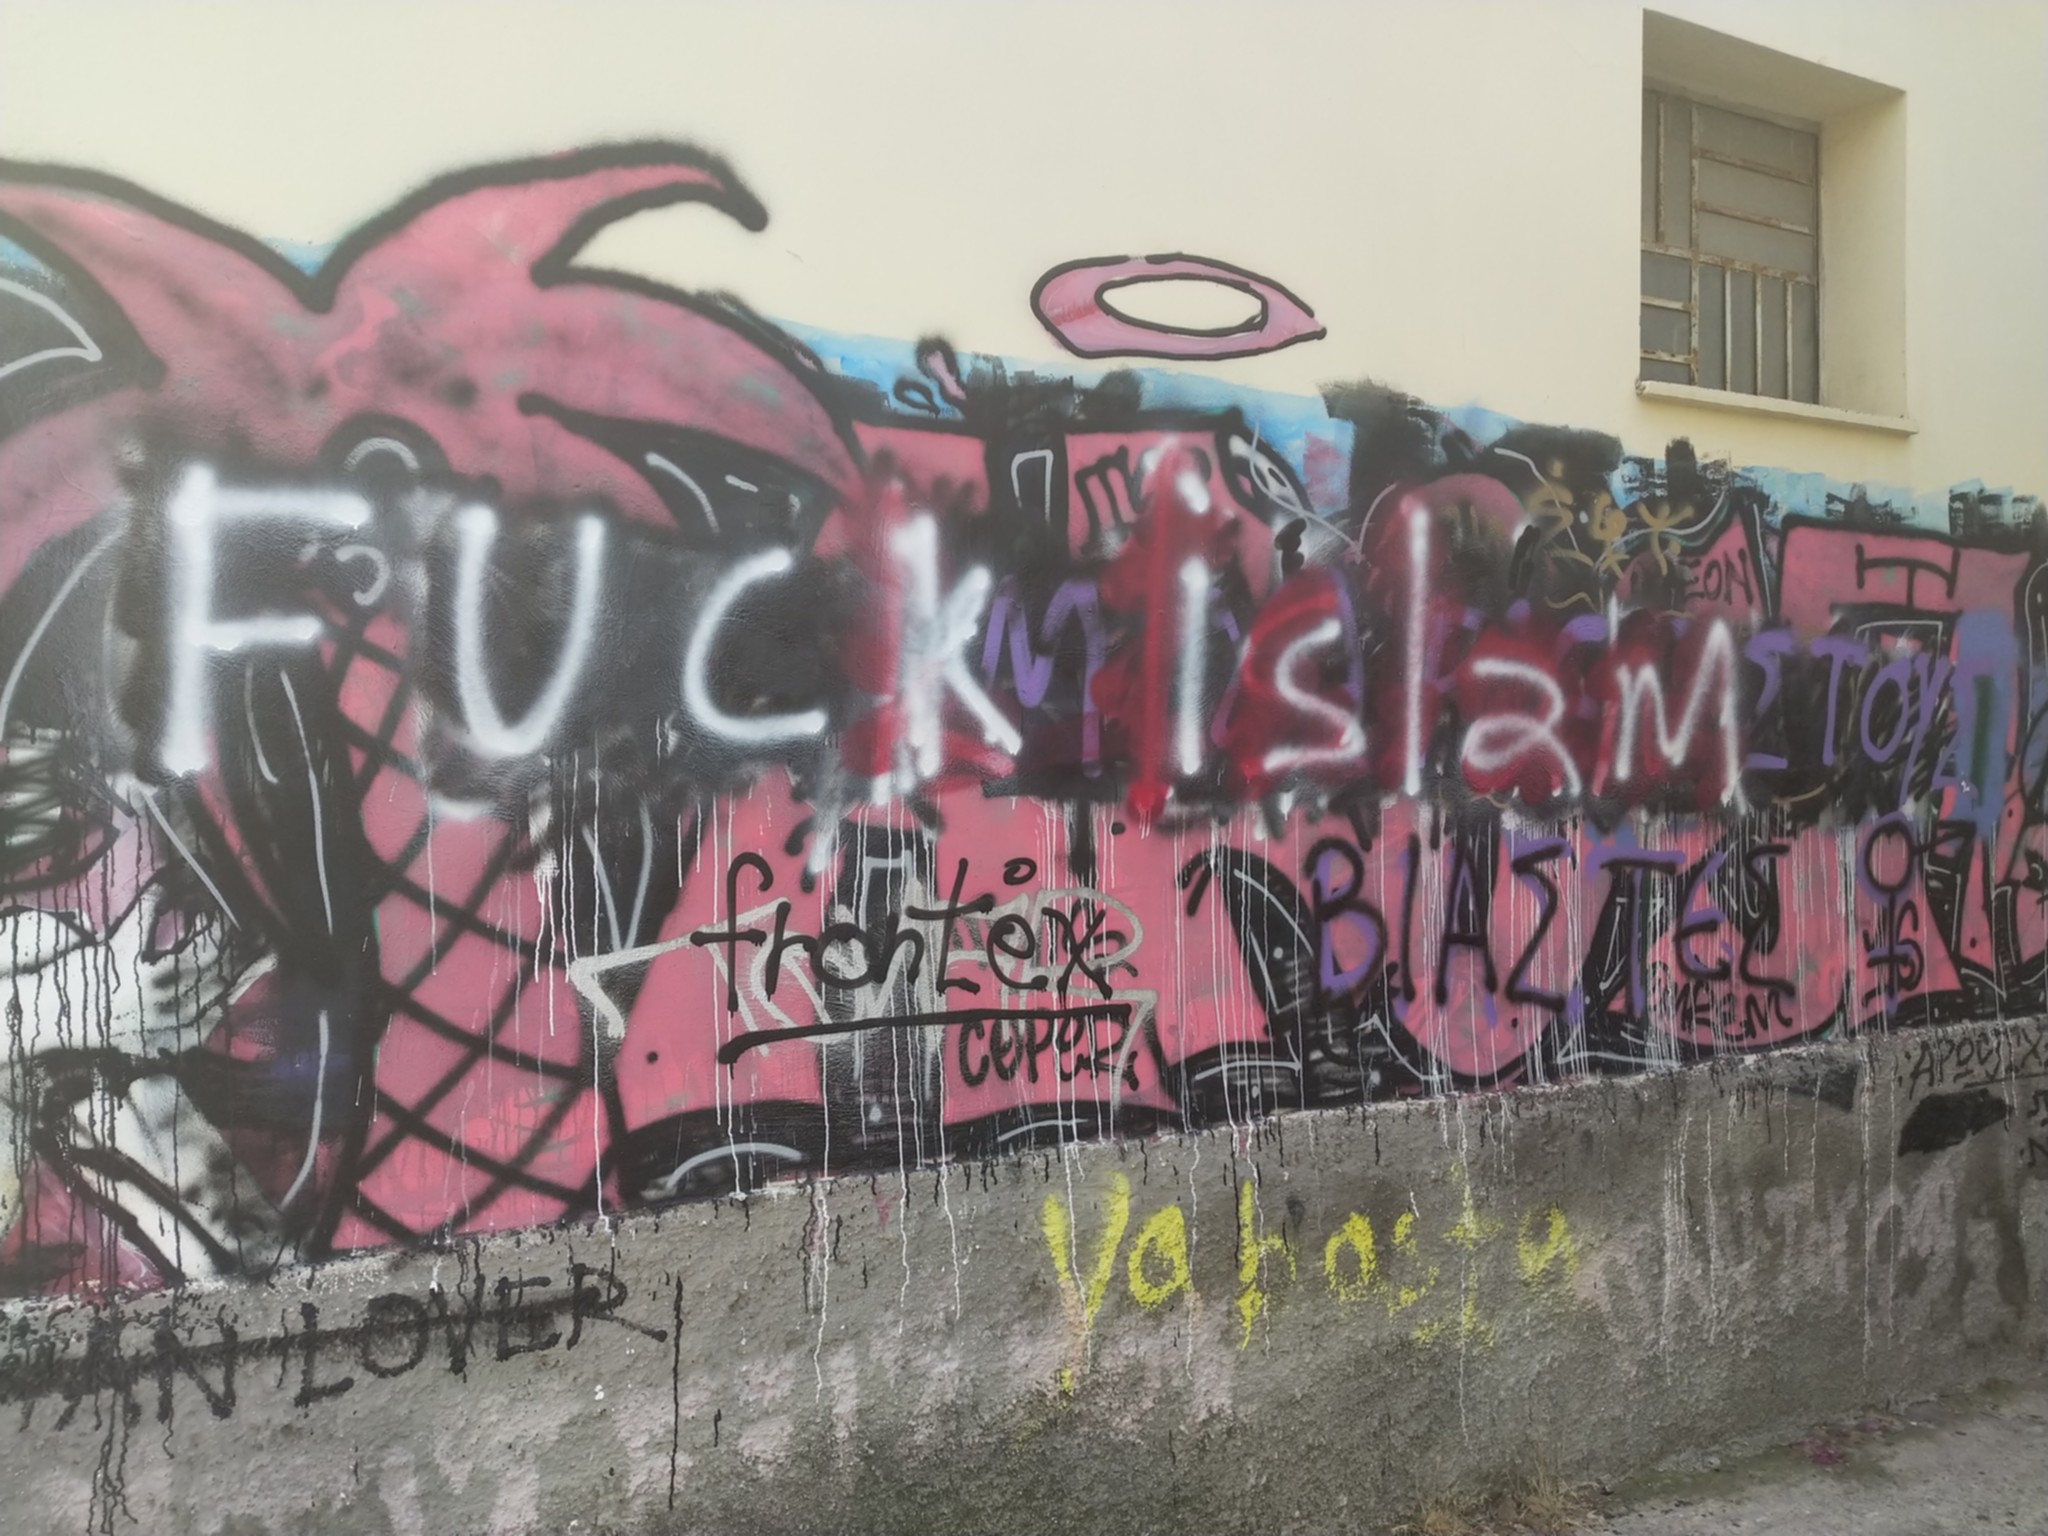 "Fuck Islam"